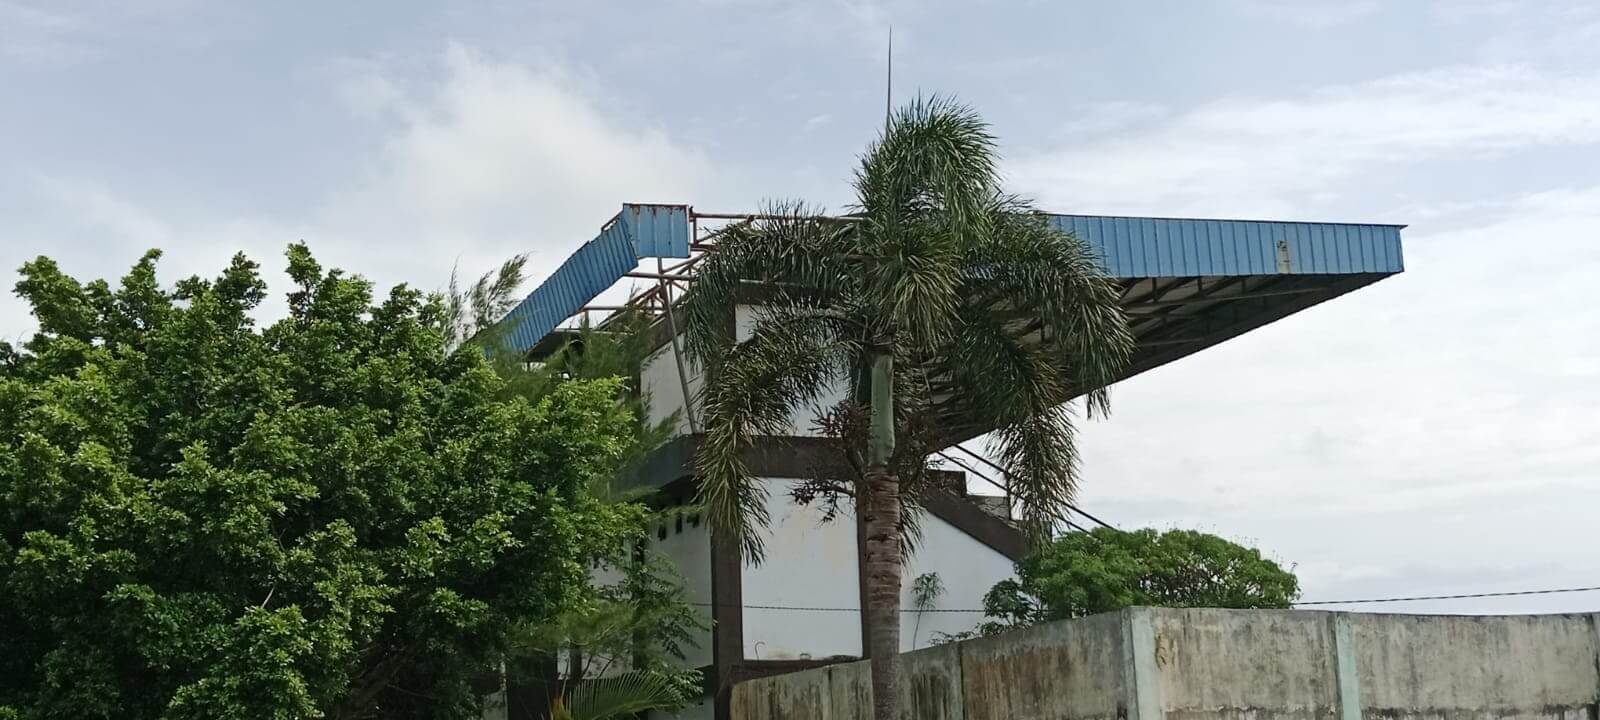 Atap Stadion Padang Panjang Lepas, Pagar Patah & Kacah Pecah, Kadispora Terkejut